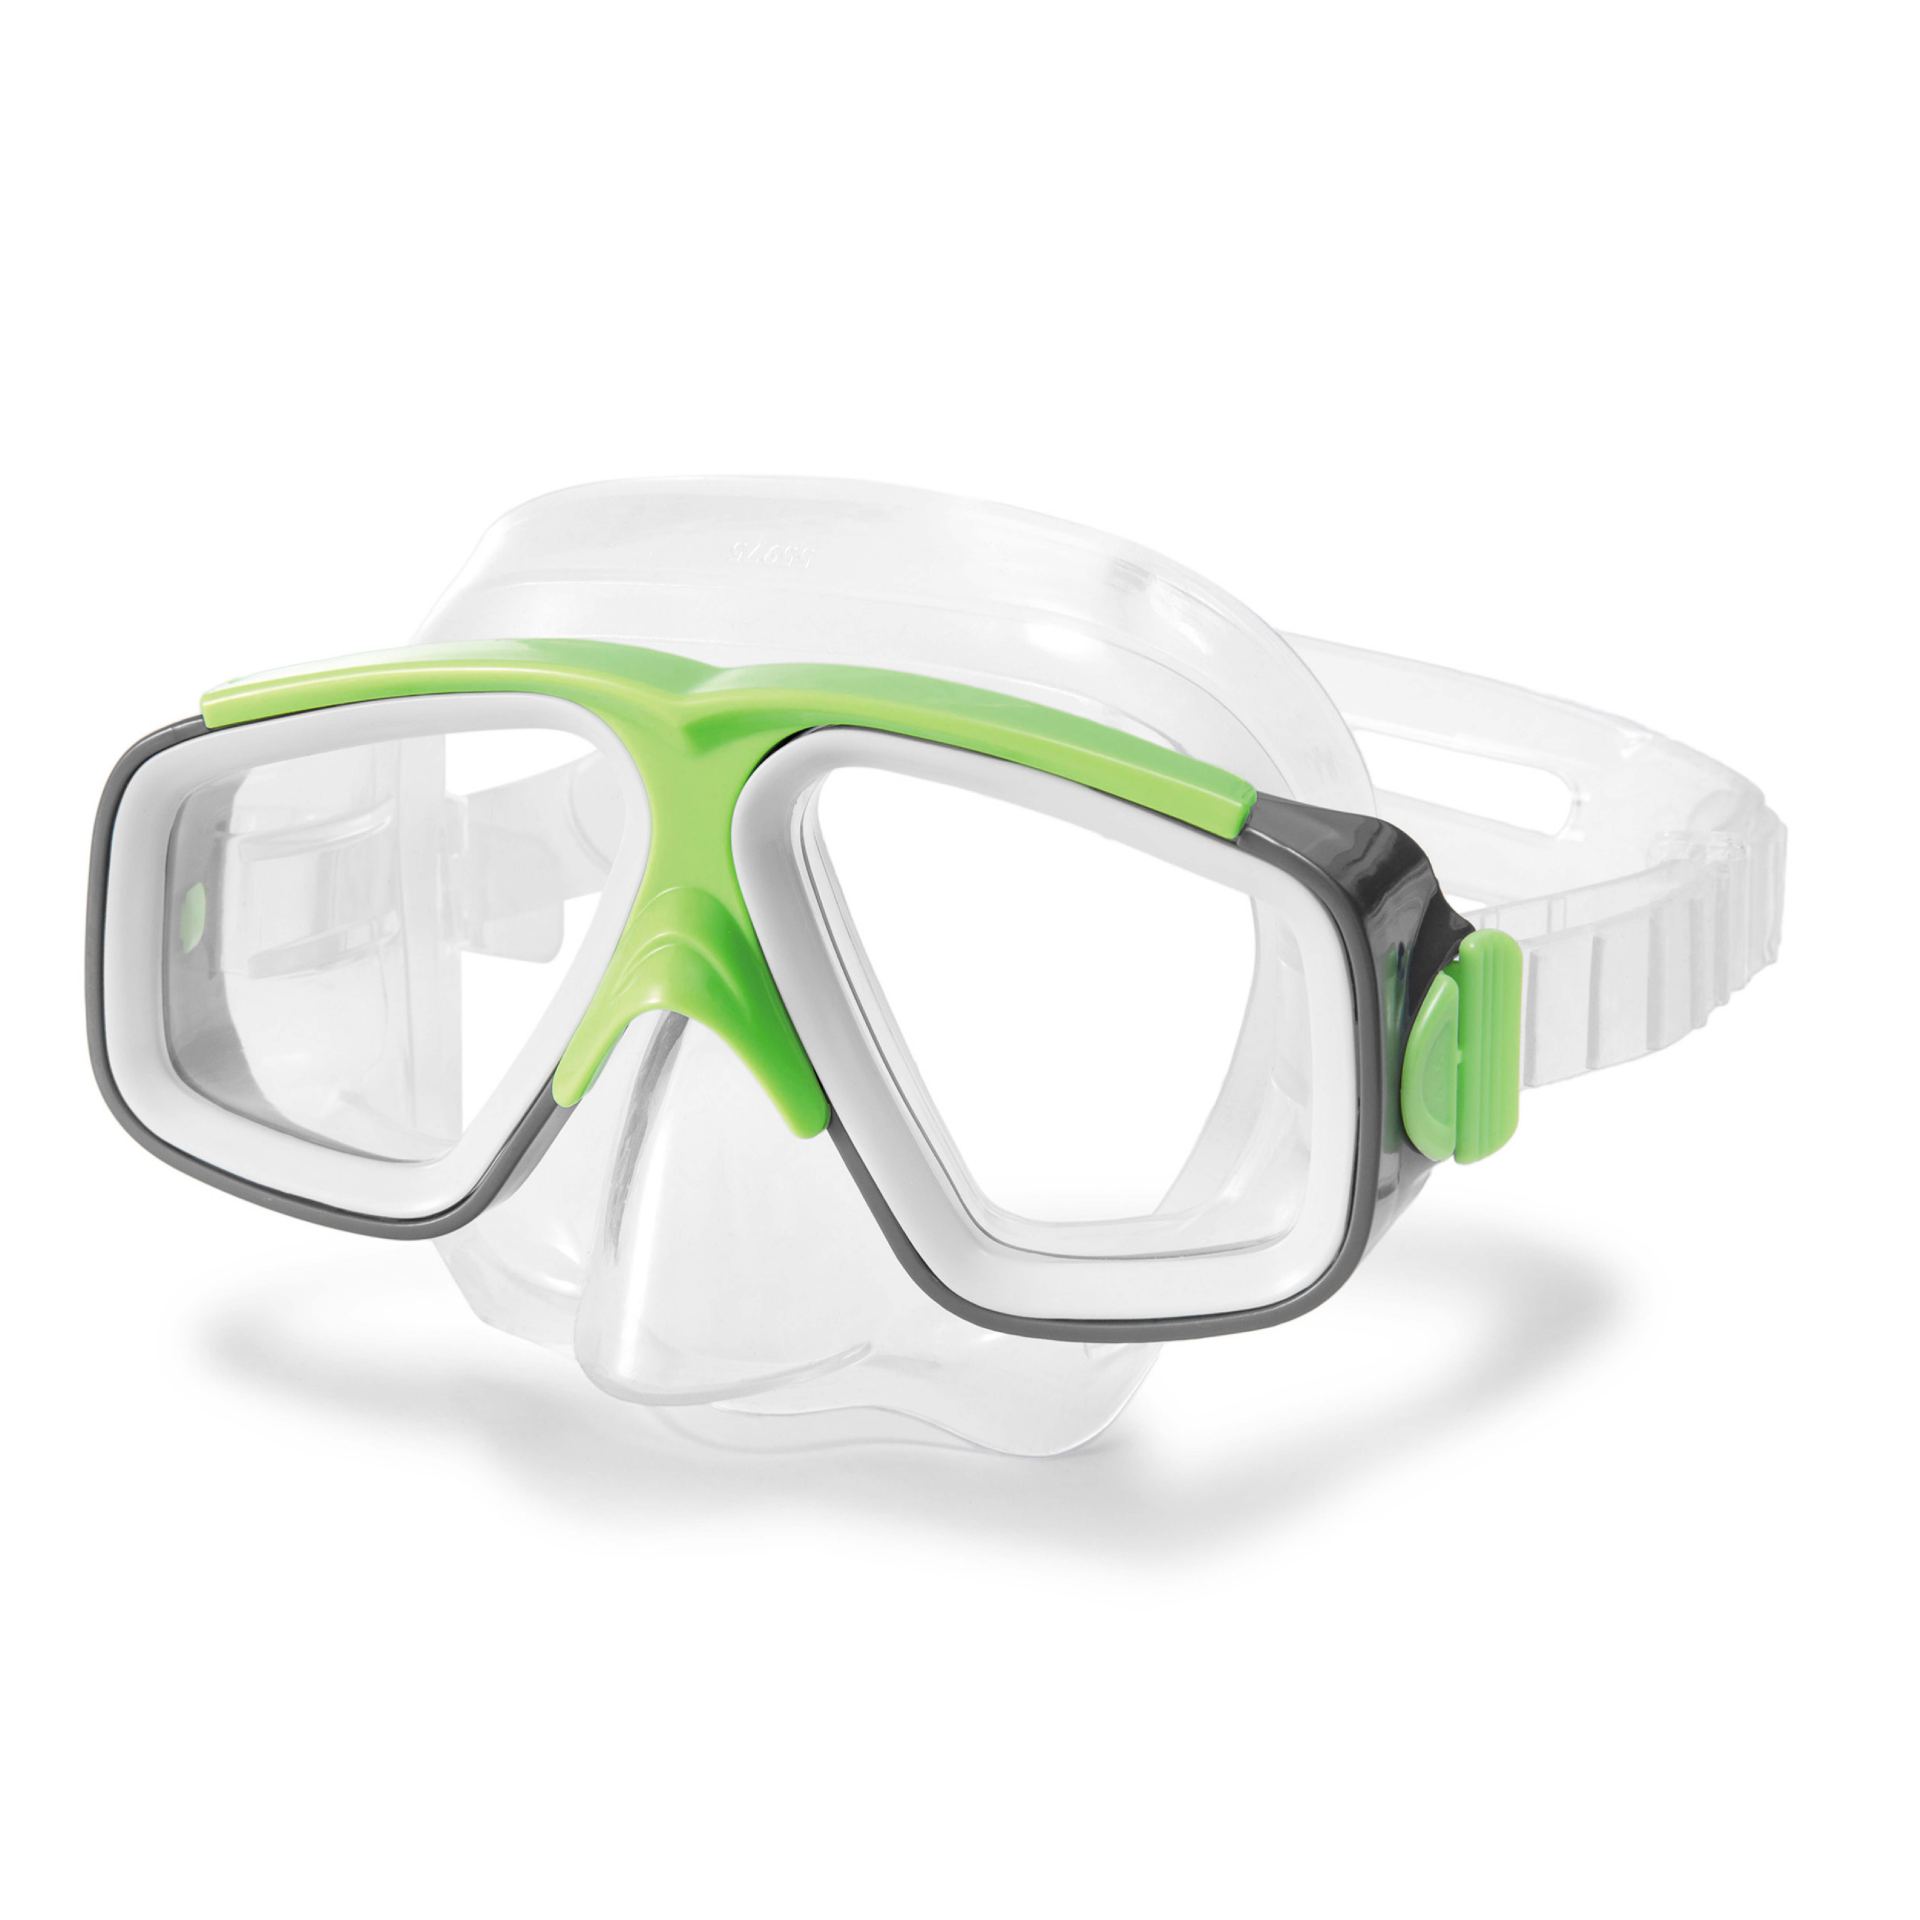 Intex surf rider masks - Groen